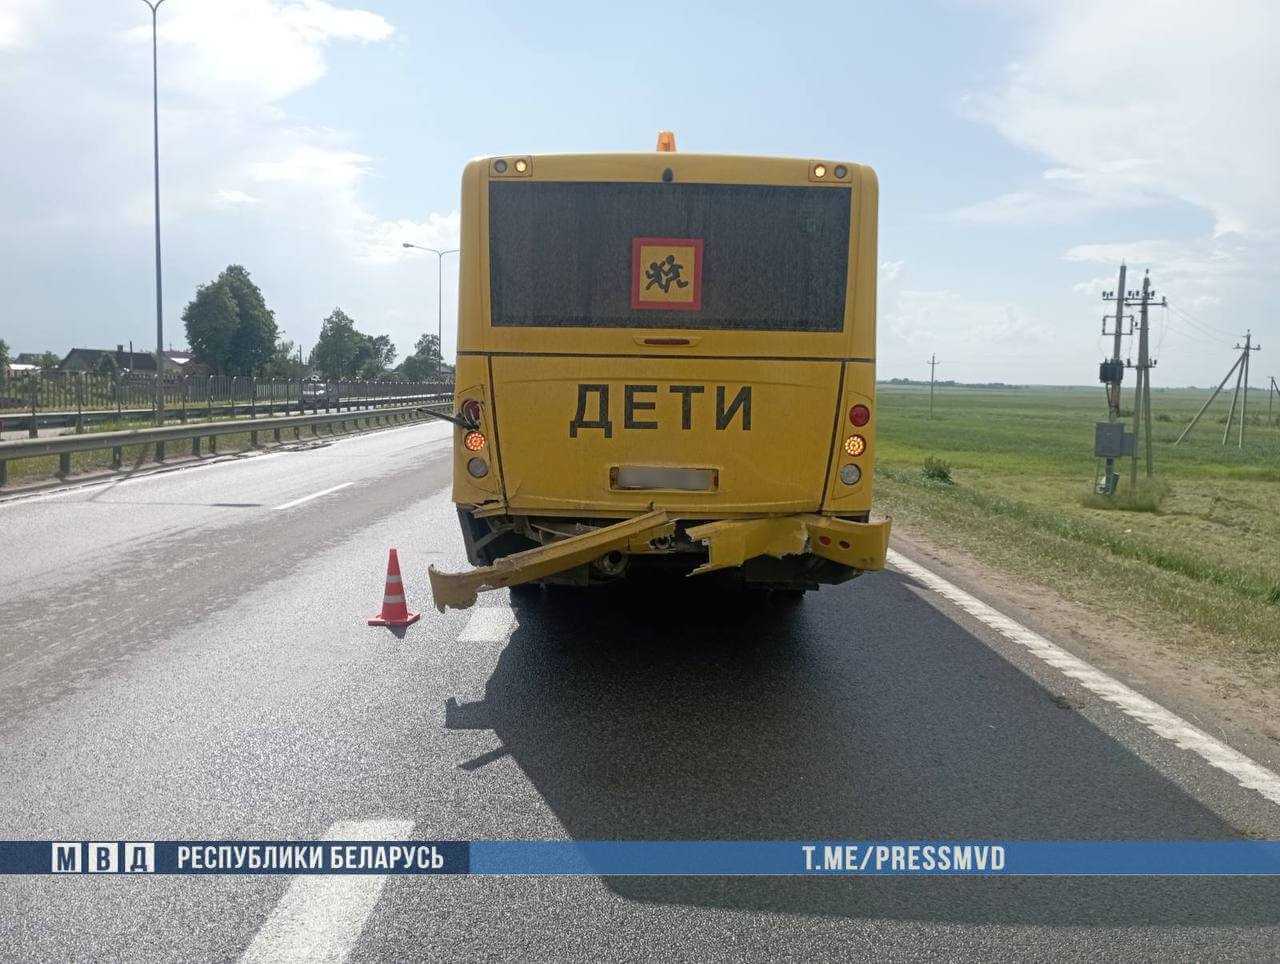 Смертельная авария: BMW под управлением могилевчанина столкнулась со школьным автобусом